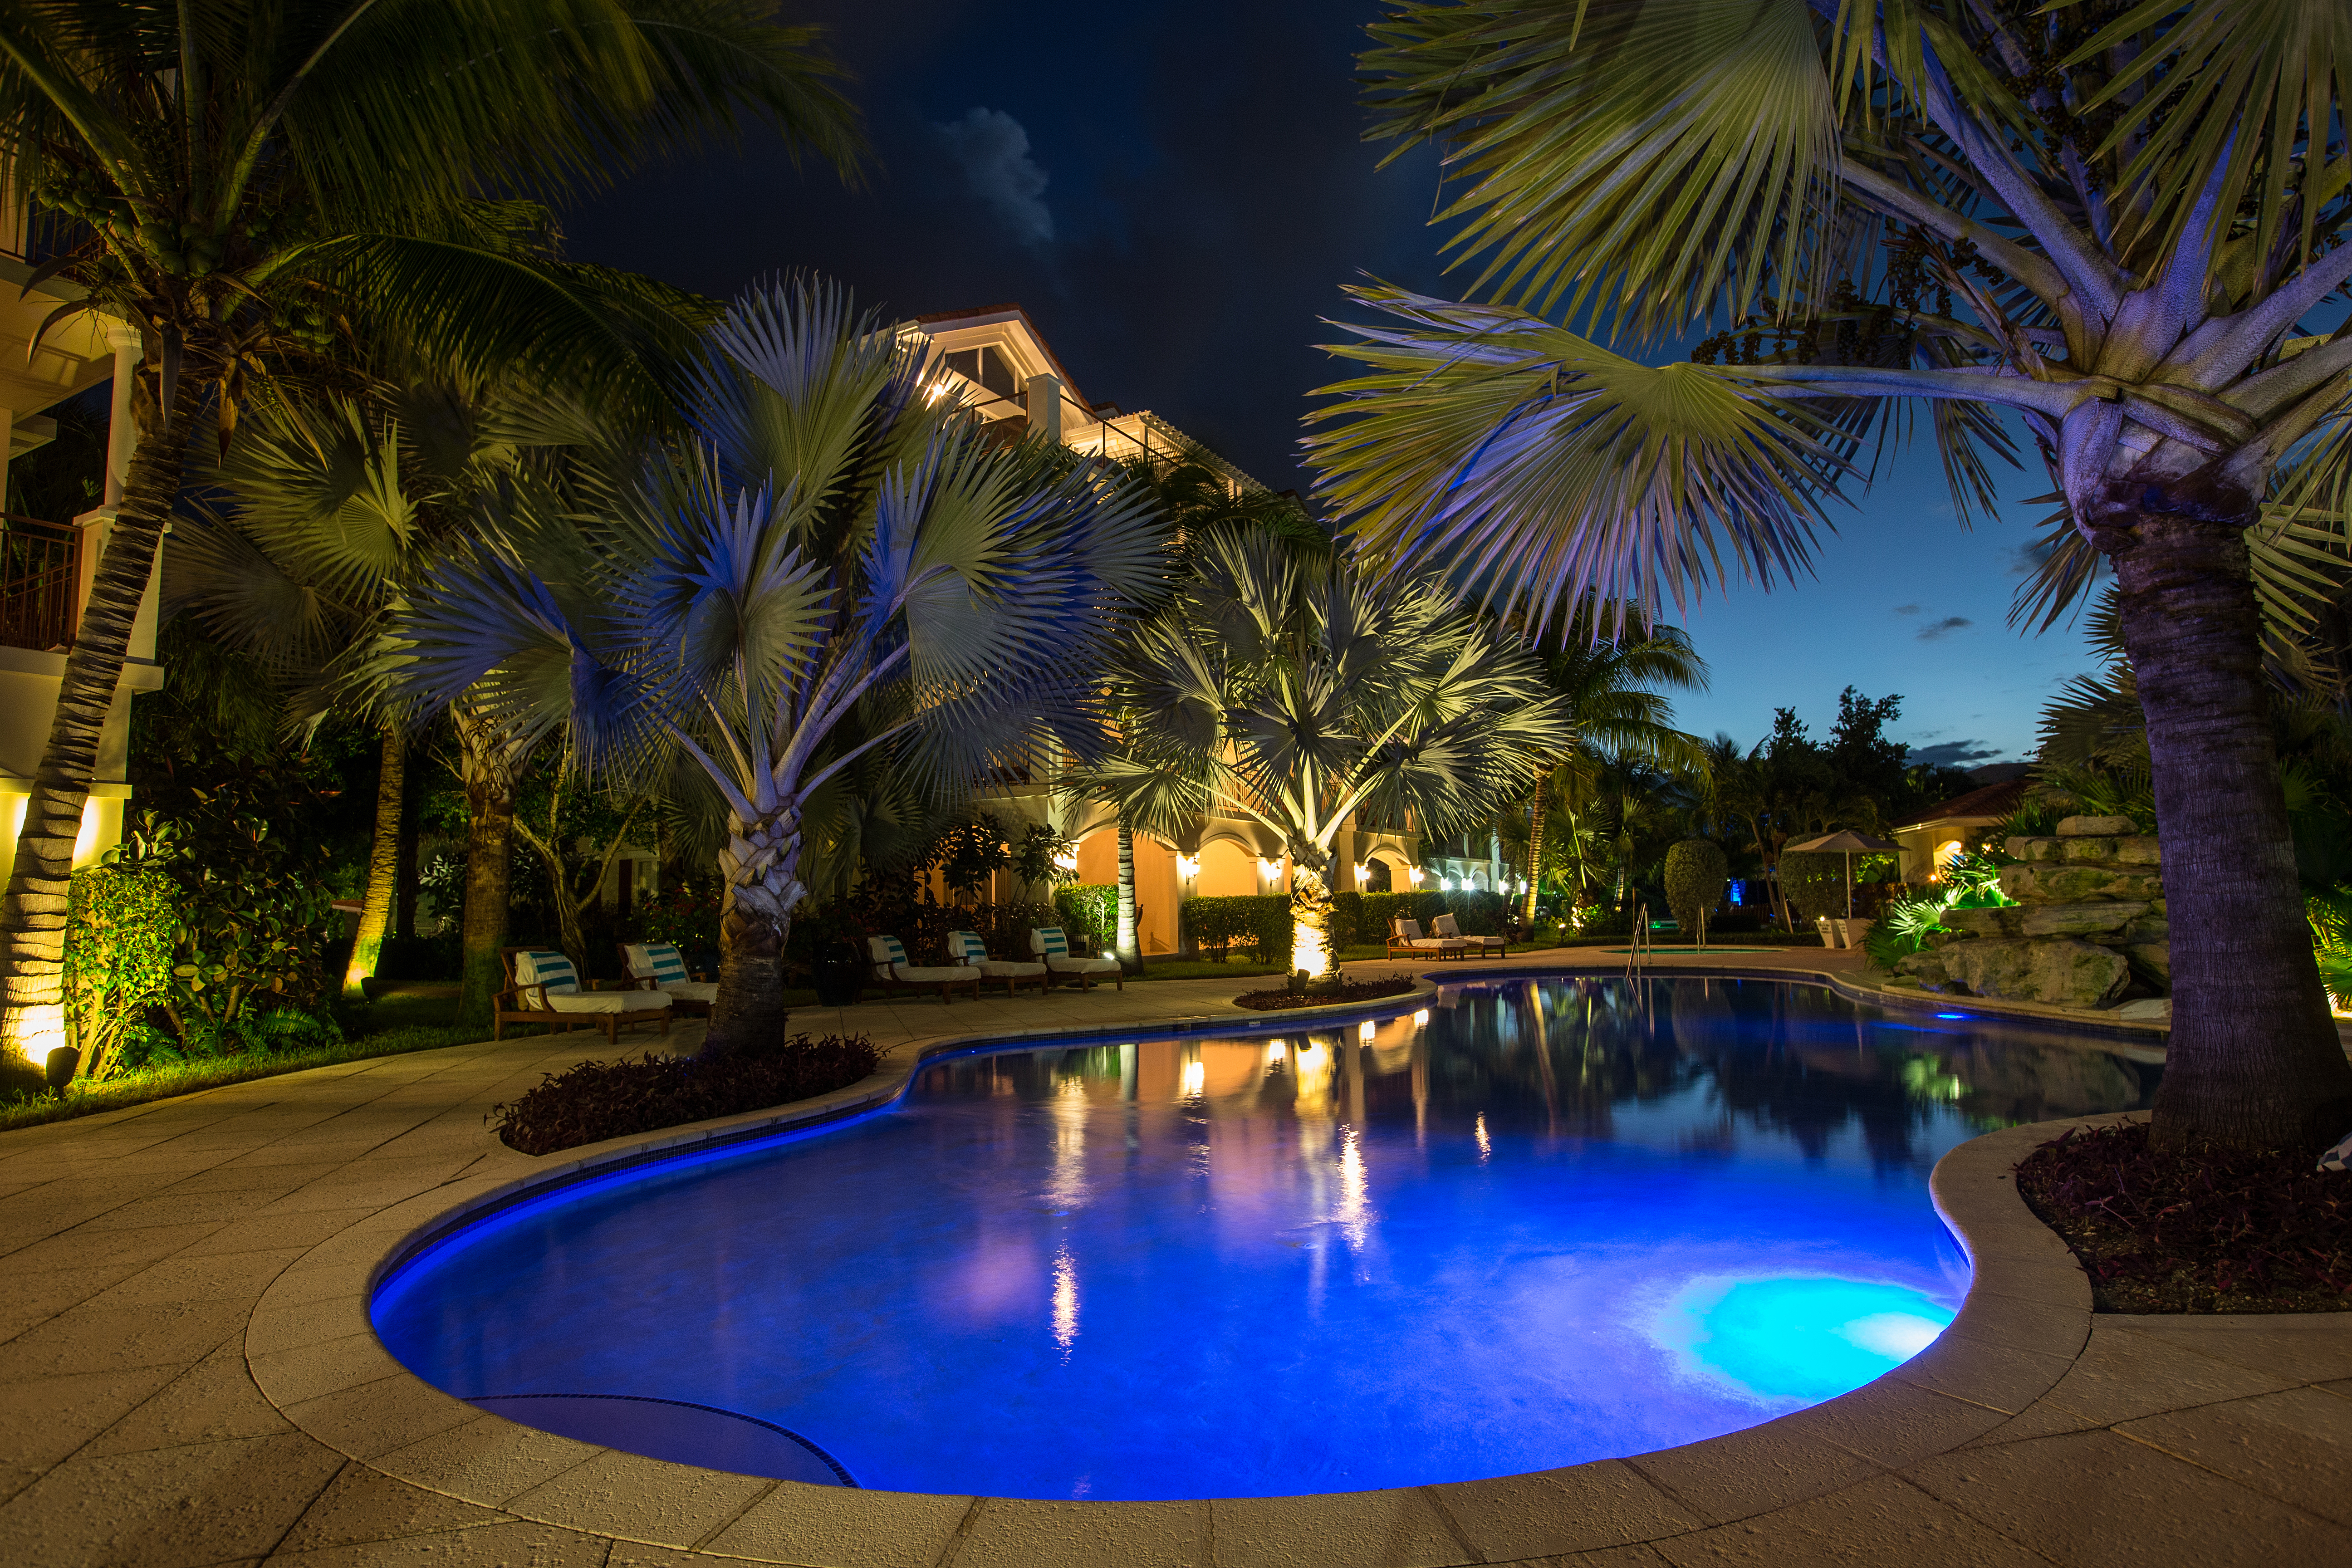 Villa del Mar Resort - Providenciales, Turks and Caicos